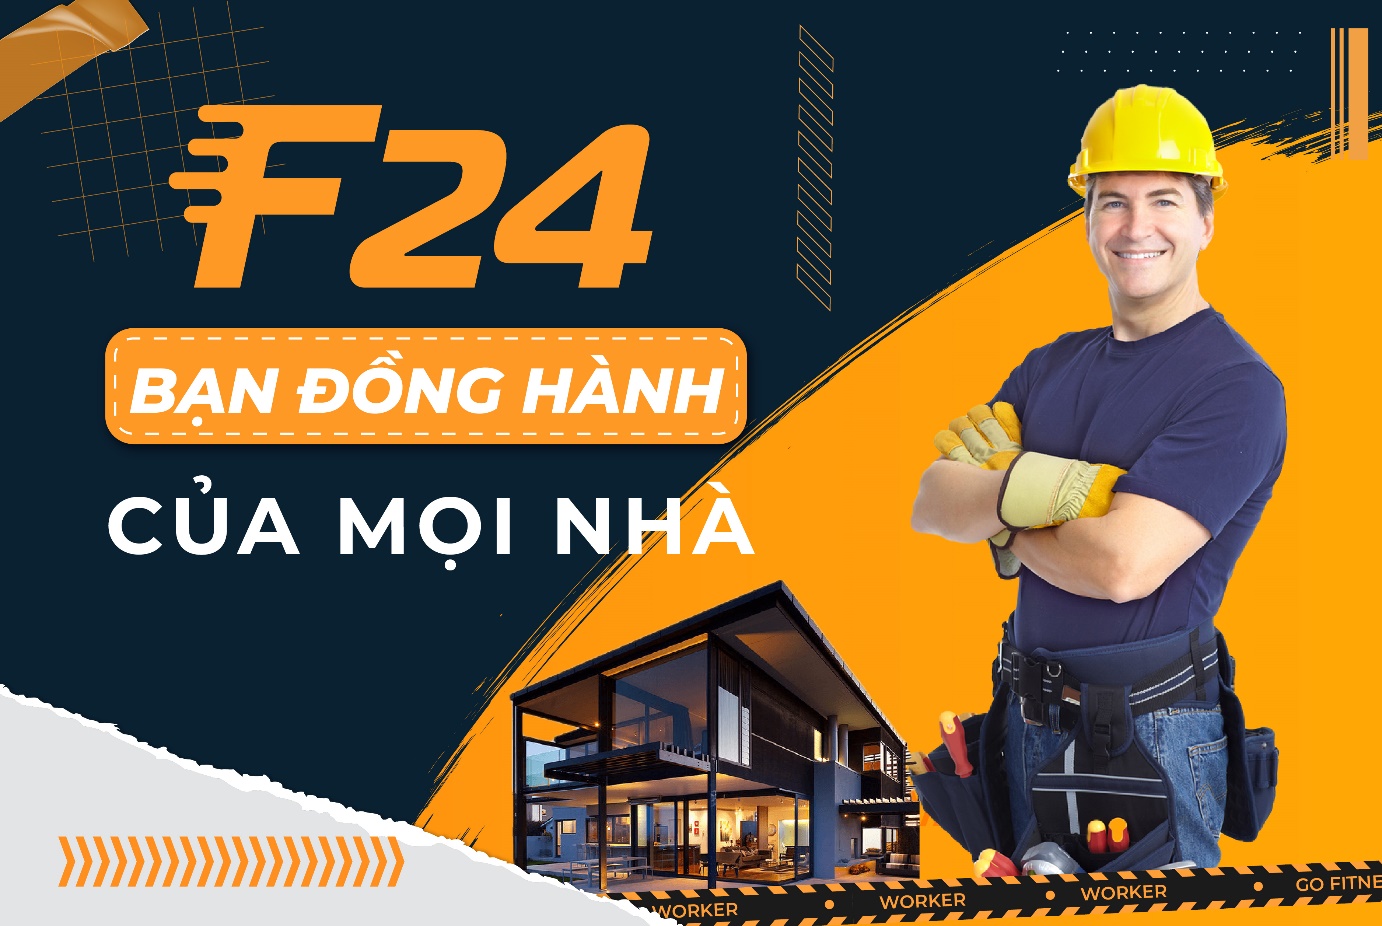 F24 - Giải pháp tối ưu khi cần tìm thợ tốt cho người tiêu dùng Việt trong giai đoạn bão giá - 1